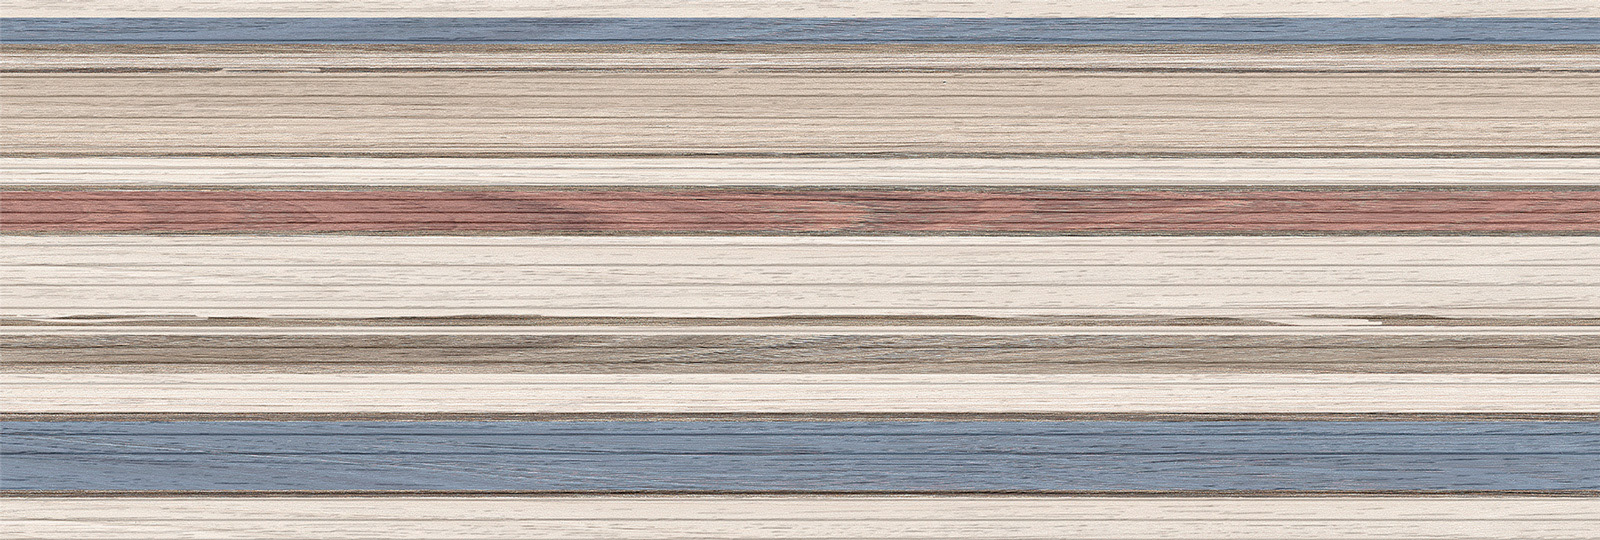 Керамическая плитка Timber Range Beige WT15TMG11 Плитка настенная 253*750*9,5 (7 шт в уп/55,776 кв.м в пал) / коллекция Timber Beige Delacora / производитель DELACORA / страна Россия